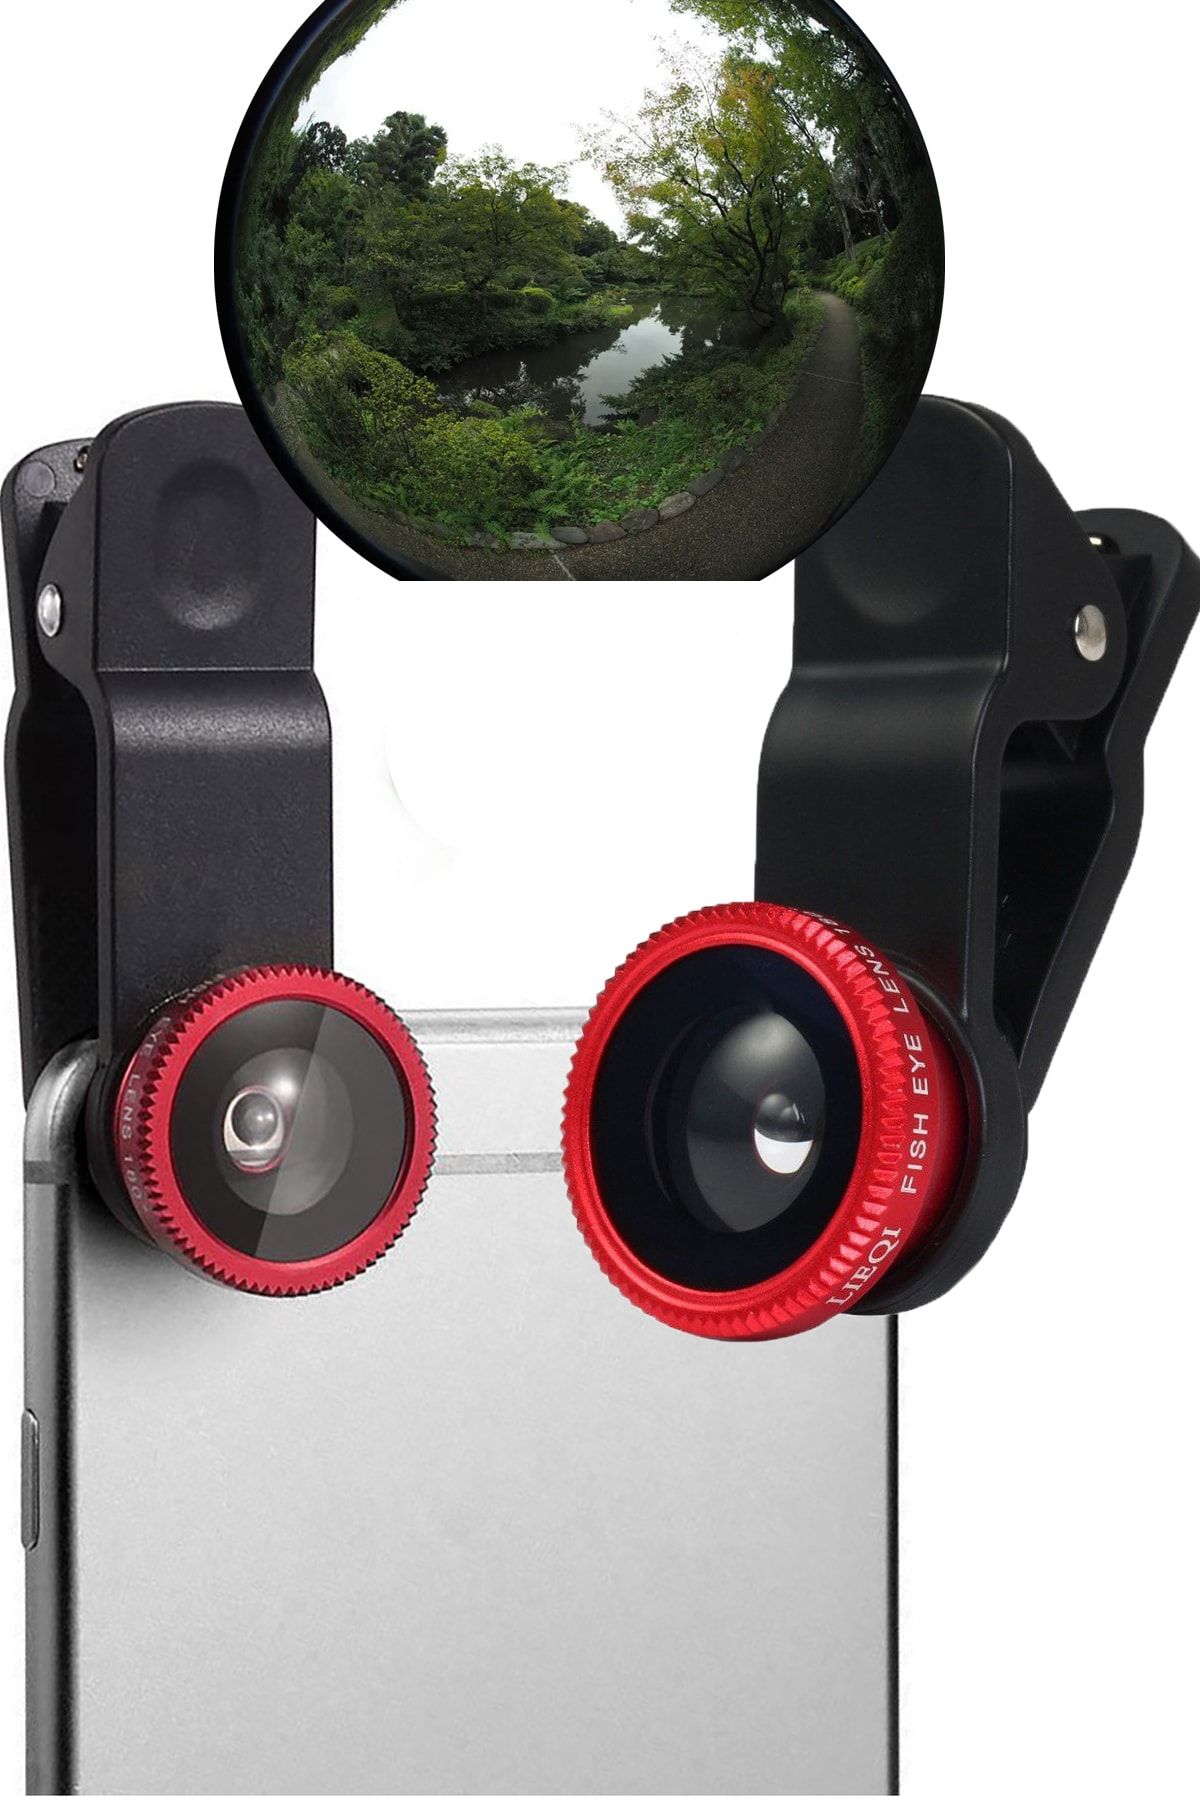 TechnoStation Balık Gözü Lens Fish Eye 3 Wide Geniş Açılı Makro Telefon Lensi